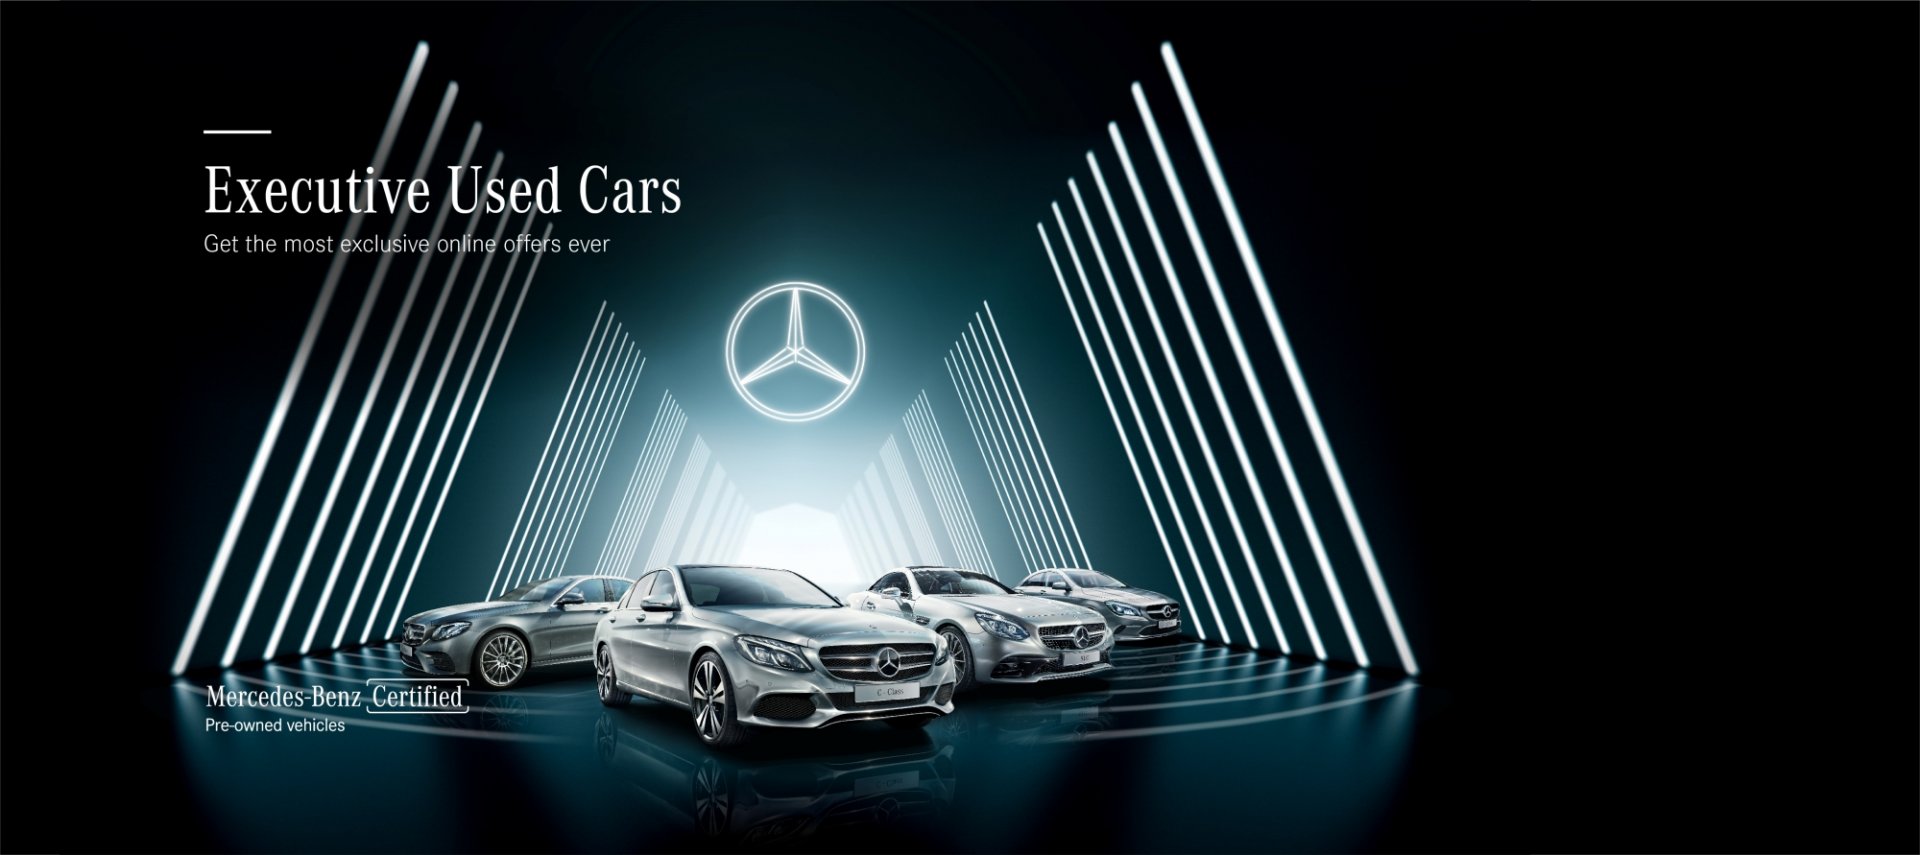 เมอร์เซเดส-เบนซ์ เสริมแกร่งธุรกิจยูสคาร์ระดับพรีเมี่ยม “Mercedes-Benz Certified” รุกจำหน่ายรถยนต์เมอร์เซเดส-เบนซ์มือสองให้กับลูกค้าโดยตรงผ่านออนไลน์ แพลตฟอร์มเป็นครั้งแรก